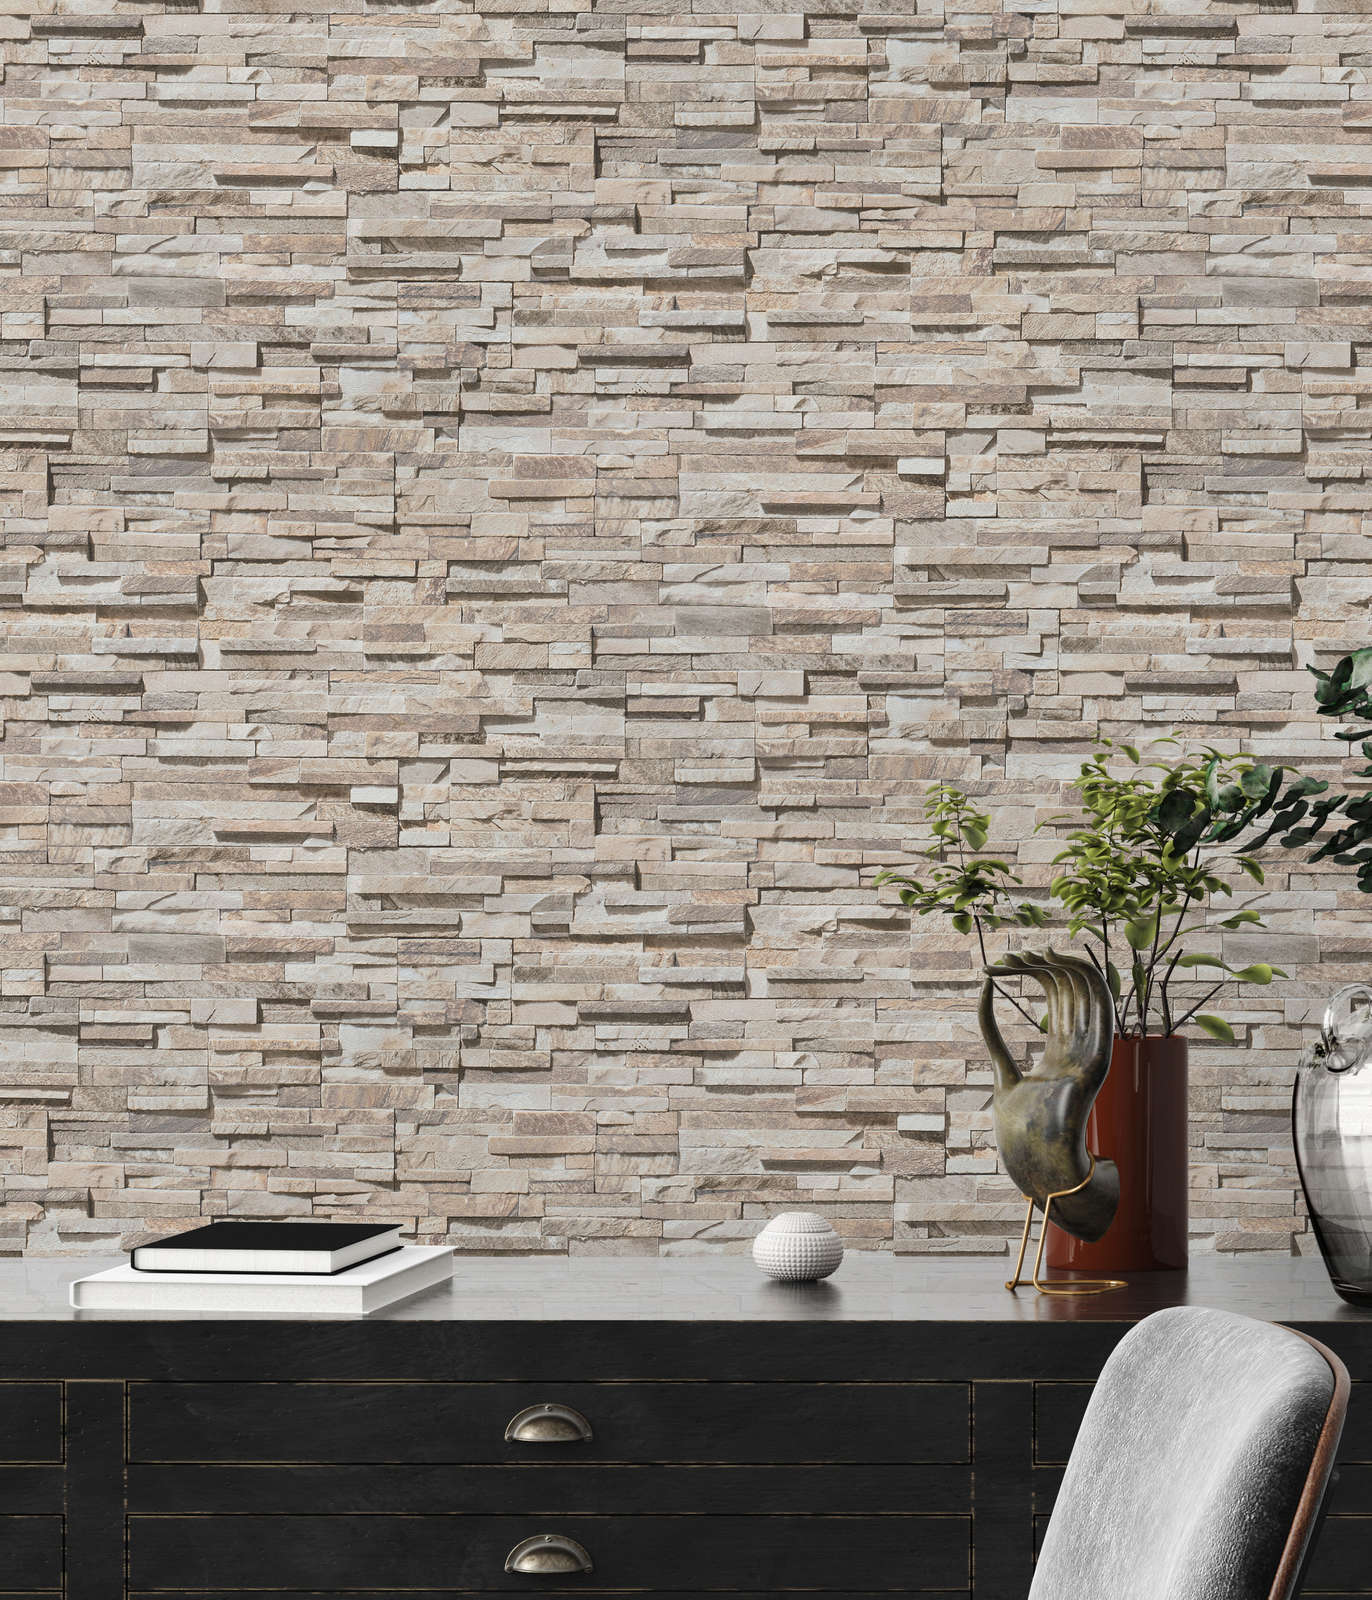             Licht glanzend vliesbehang met stenen muur-look - beige, bruin
        